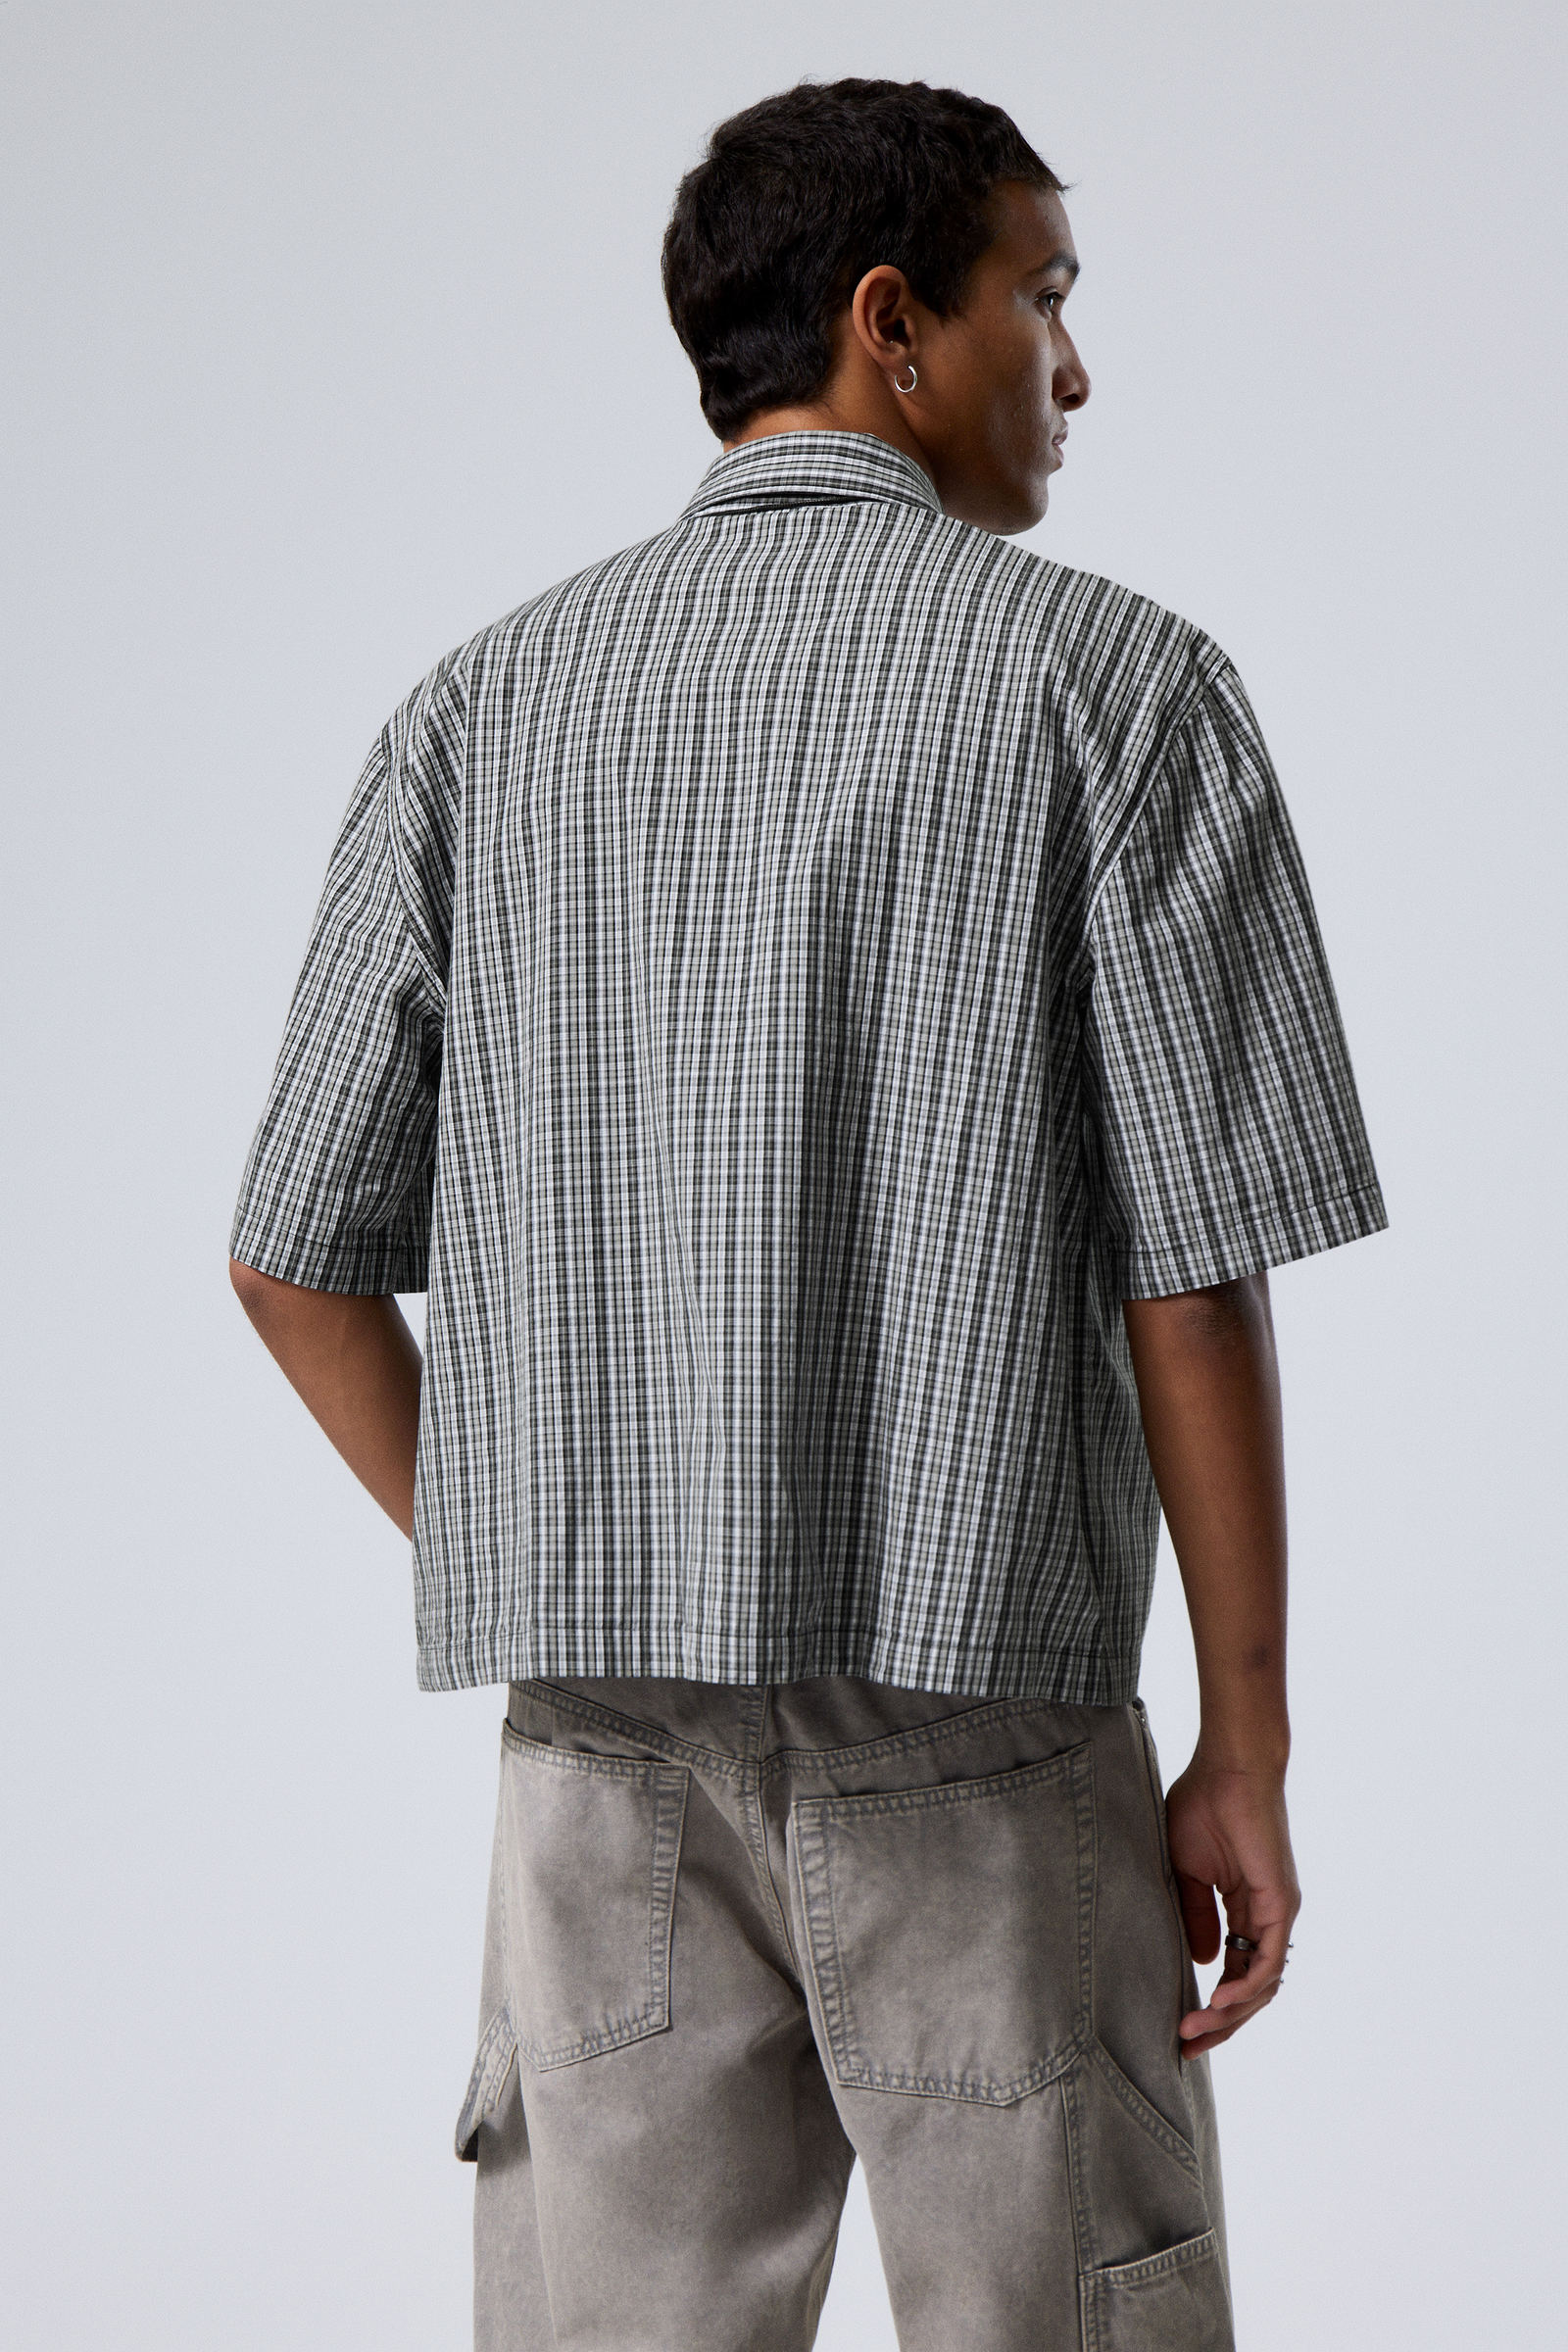 #272628 - Cropped Short Sleeve Shirt - 2